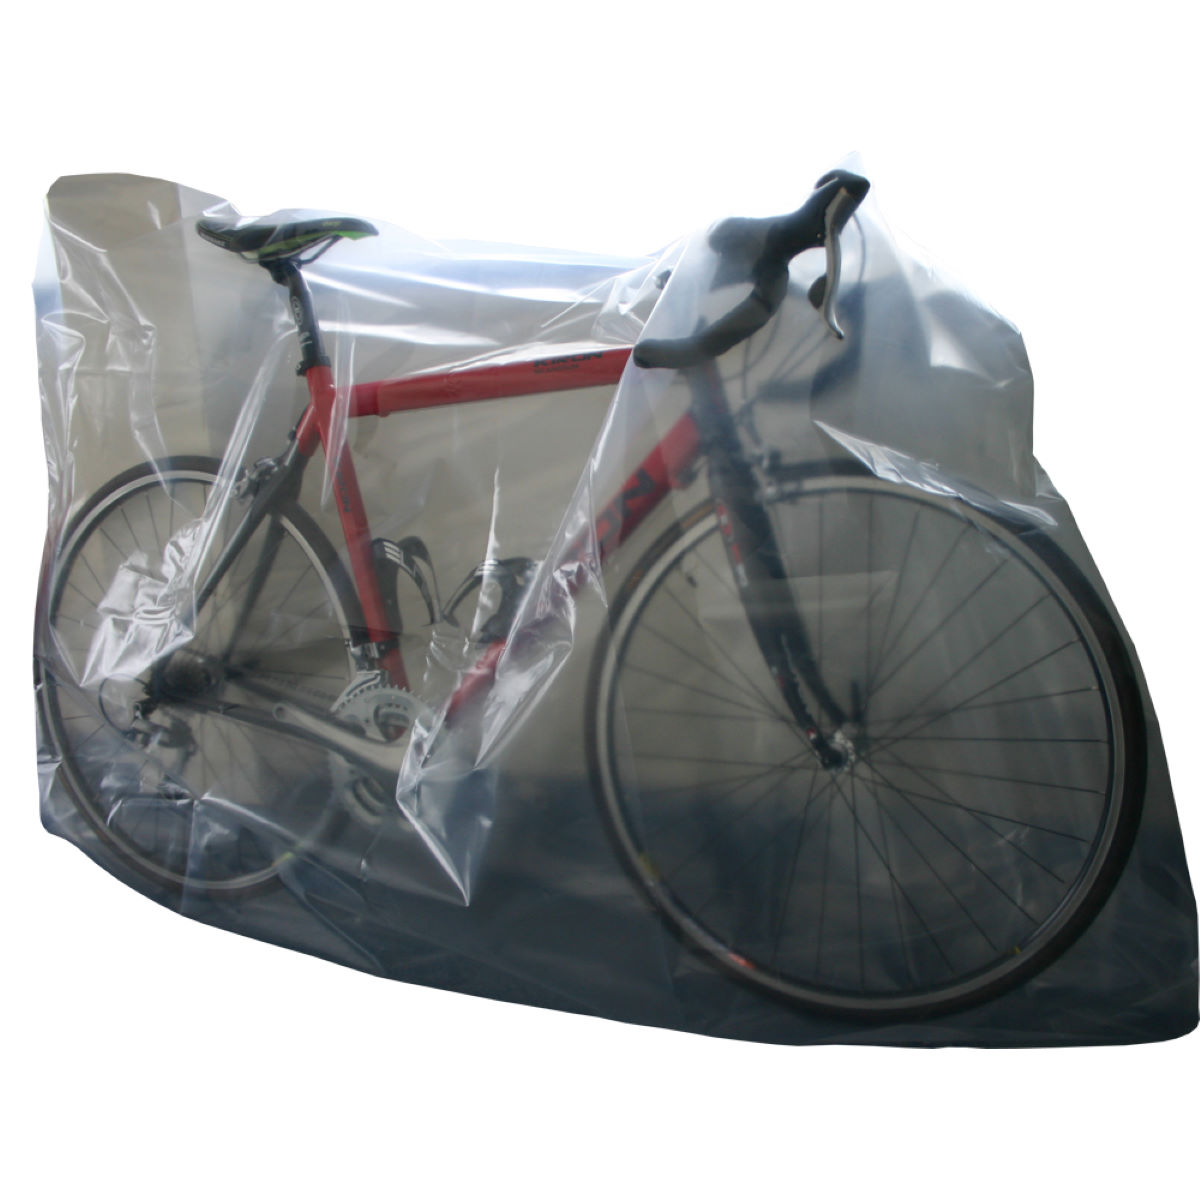 Bolsa de plástico para la bici CTC Cycling - Bolsas portabicicletas